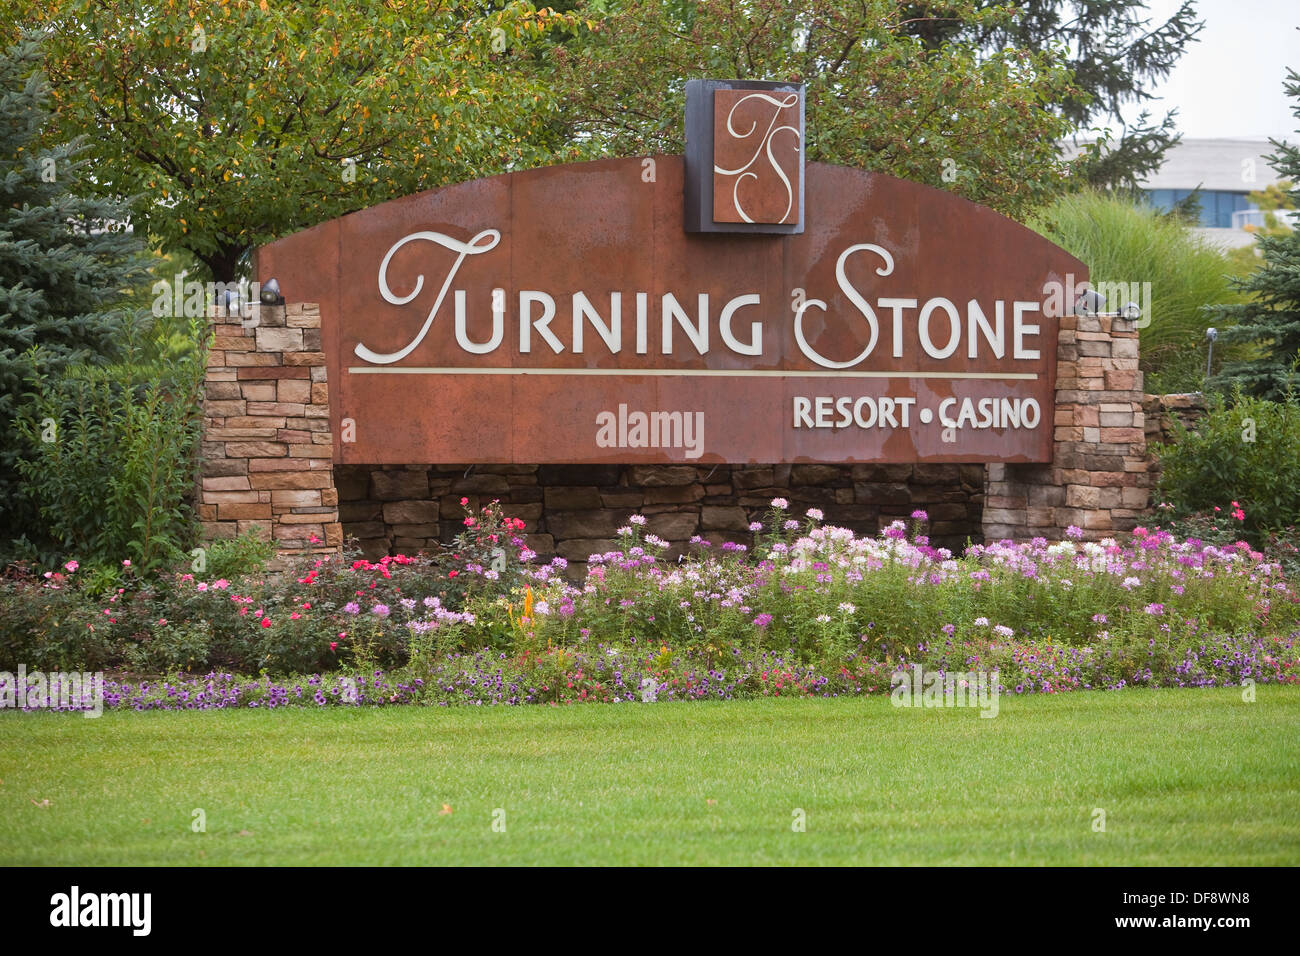 turning stone verona ny casino